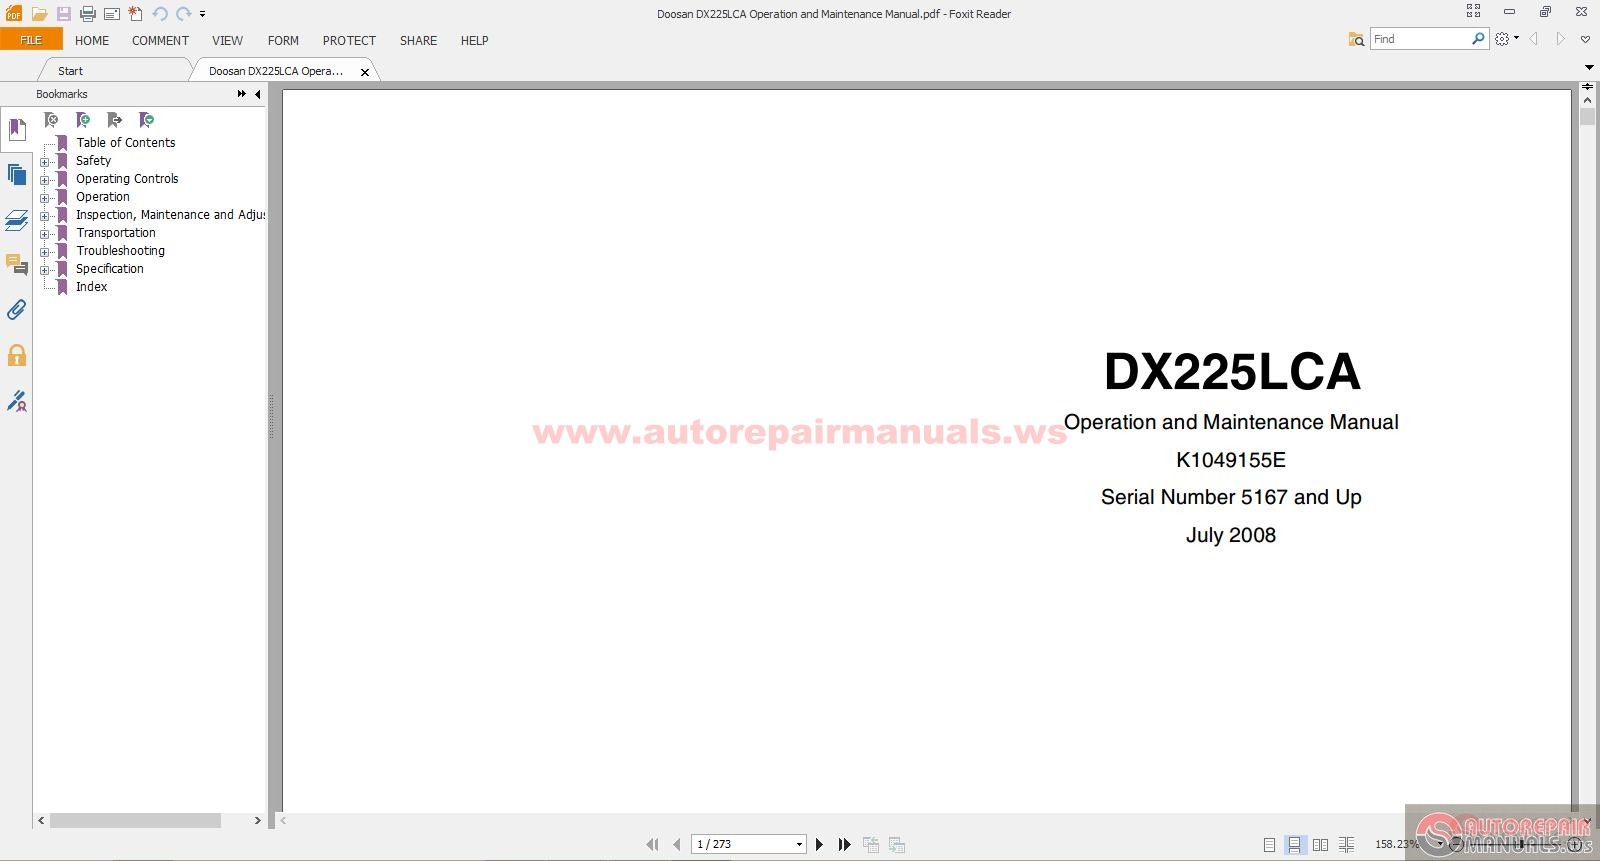 Doosan Dx225lca Operation And Maintenance Manual Auto Repair Manual Forum Heavy Equipment Forums Download Repair Workshop Manual